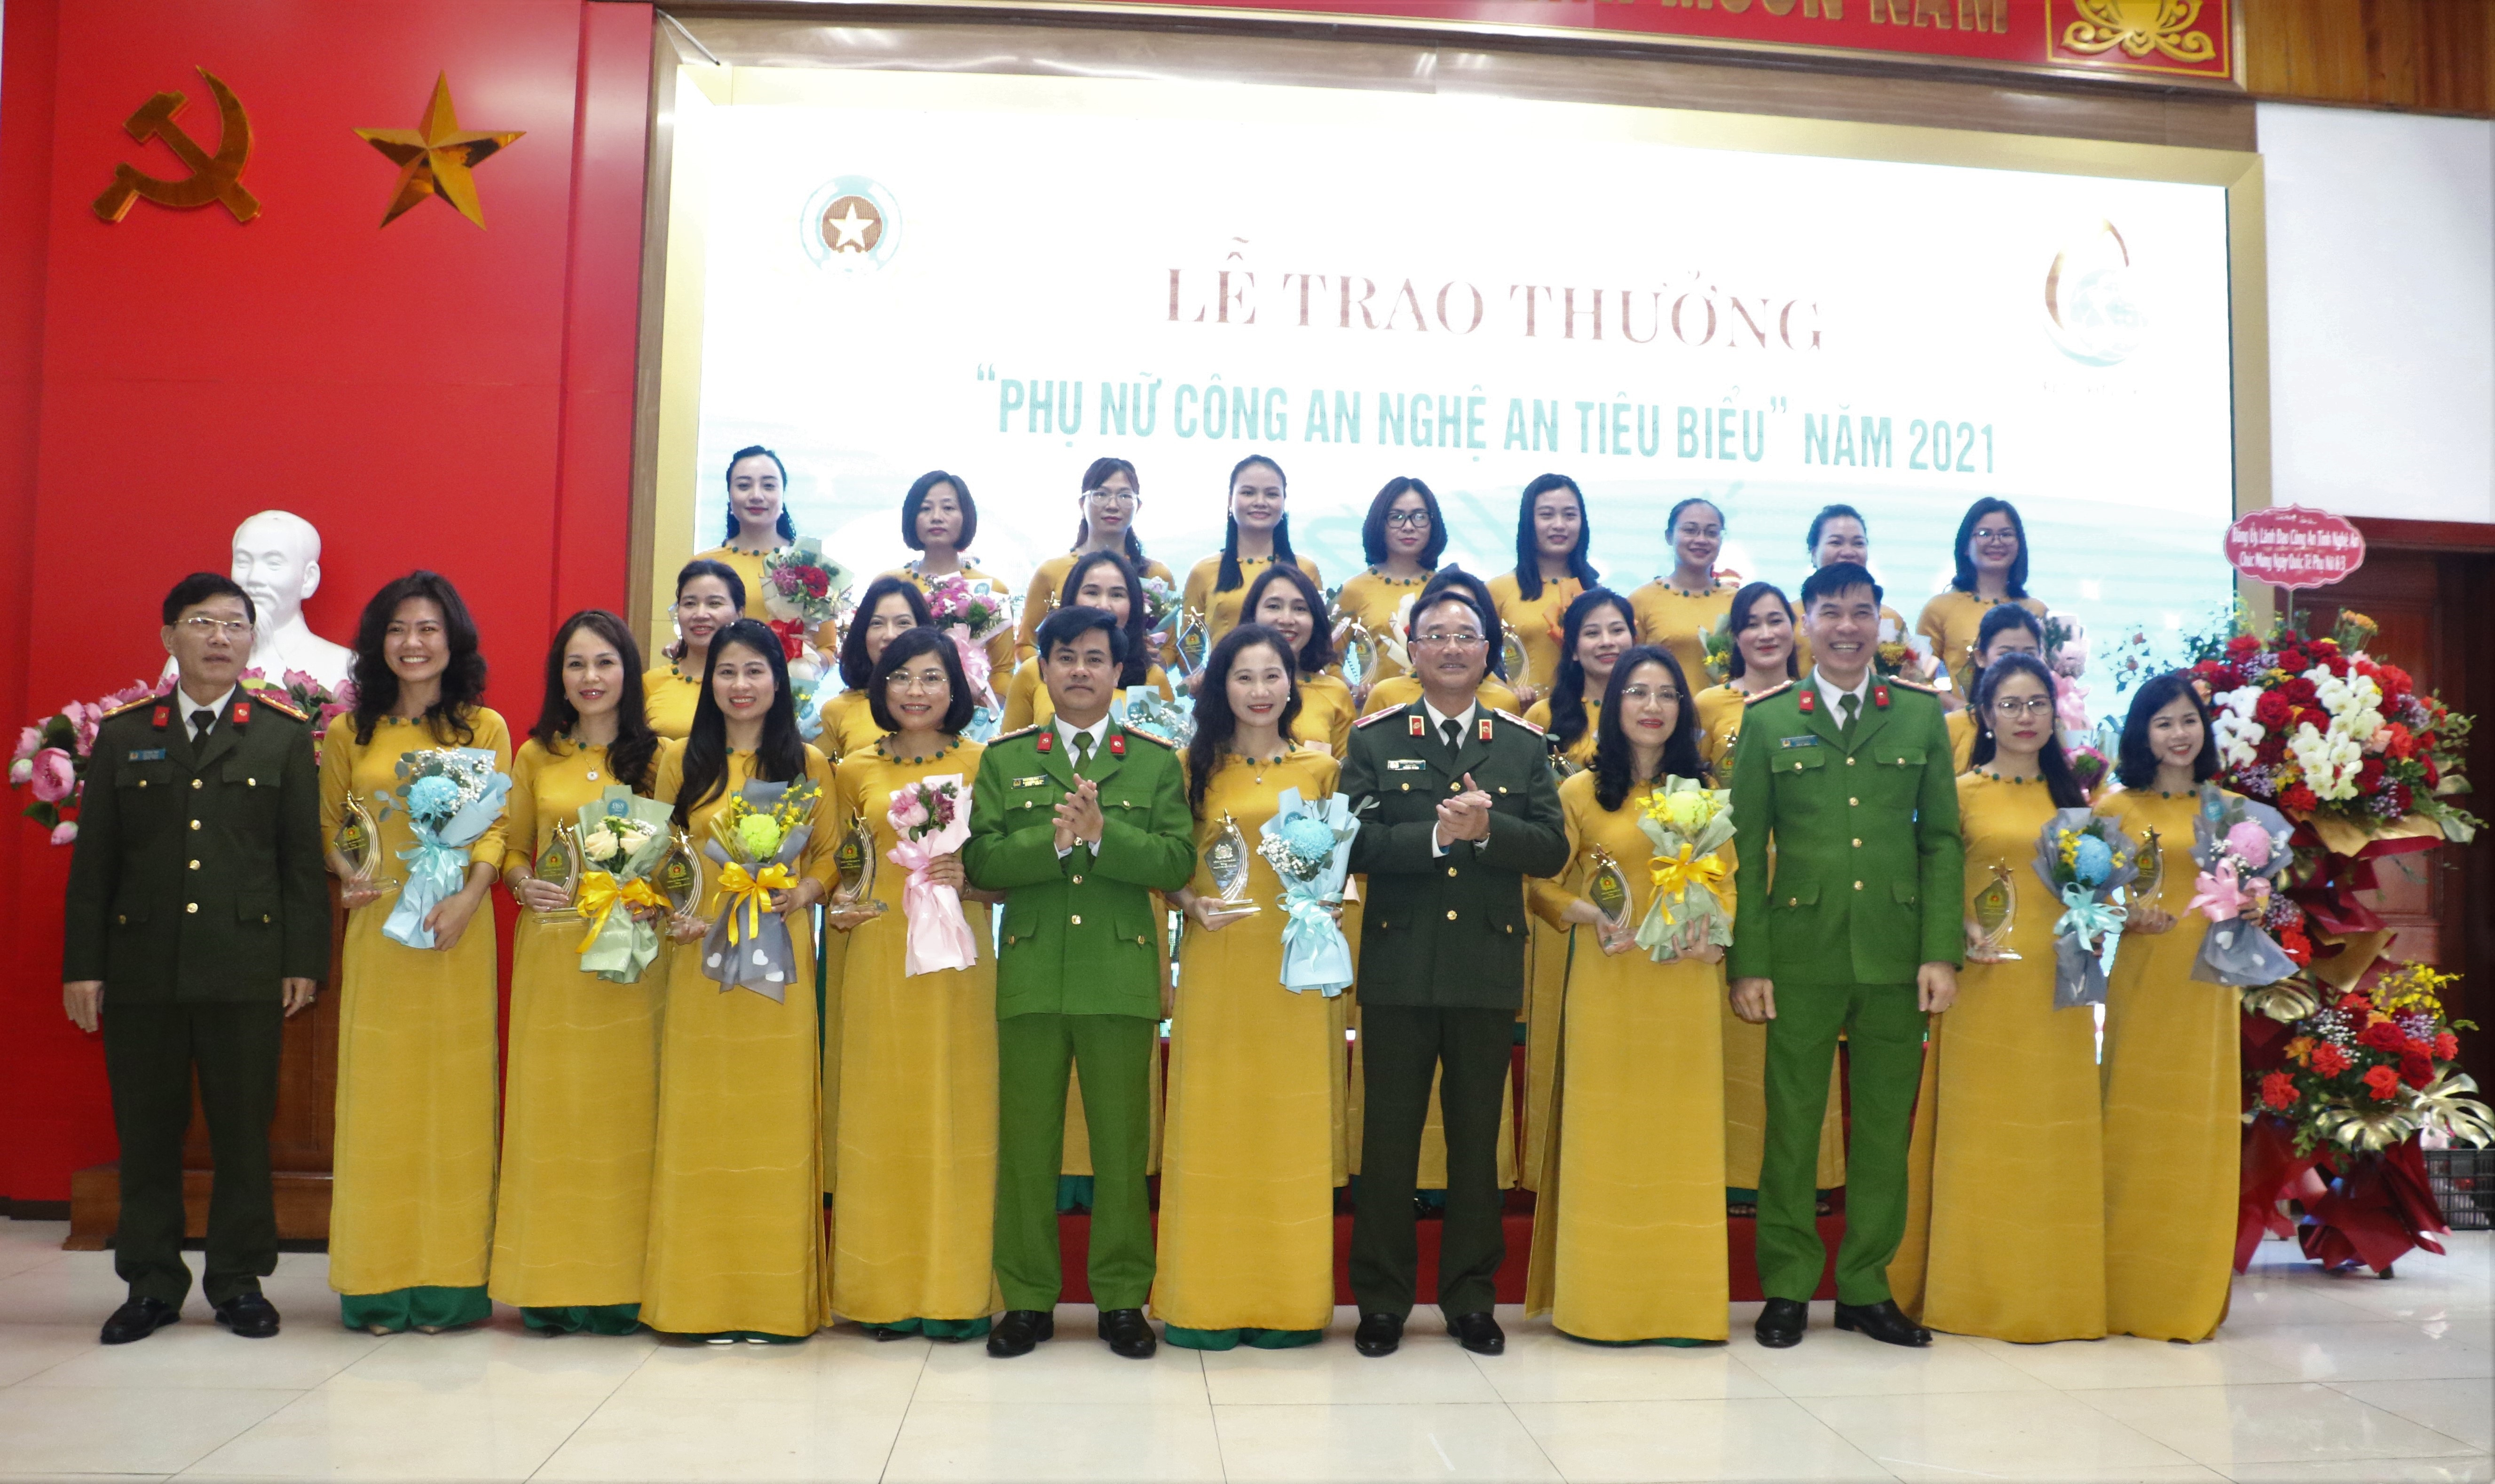 Lãnh đạo Công an tỉnh chụp ảnh lưu niệm với 30 phụ nữ Công an Nghệ An tiêu biểu